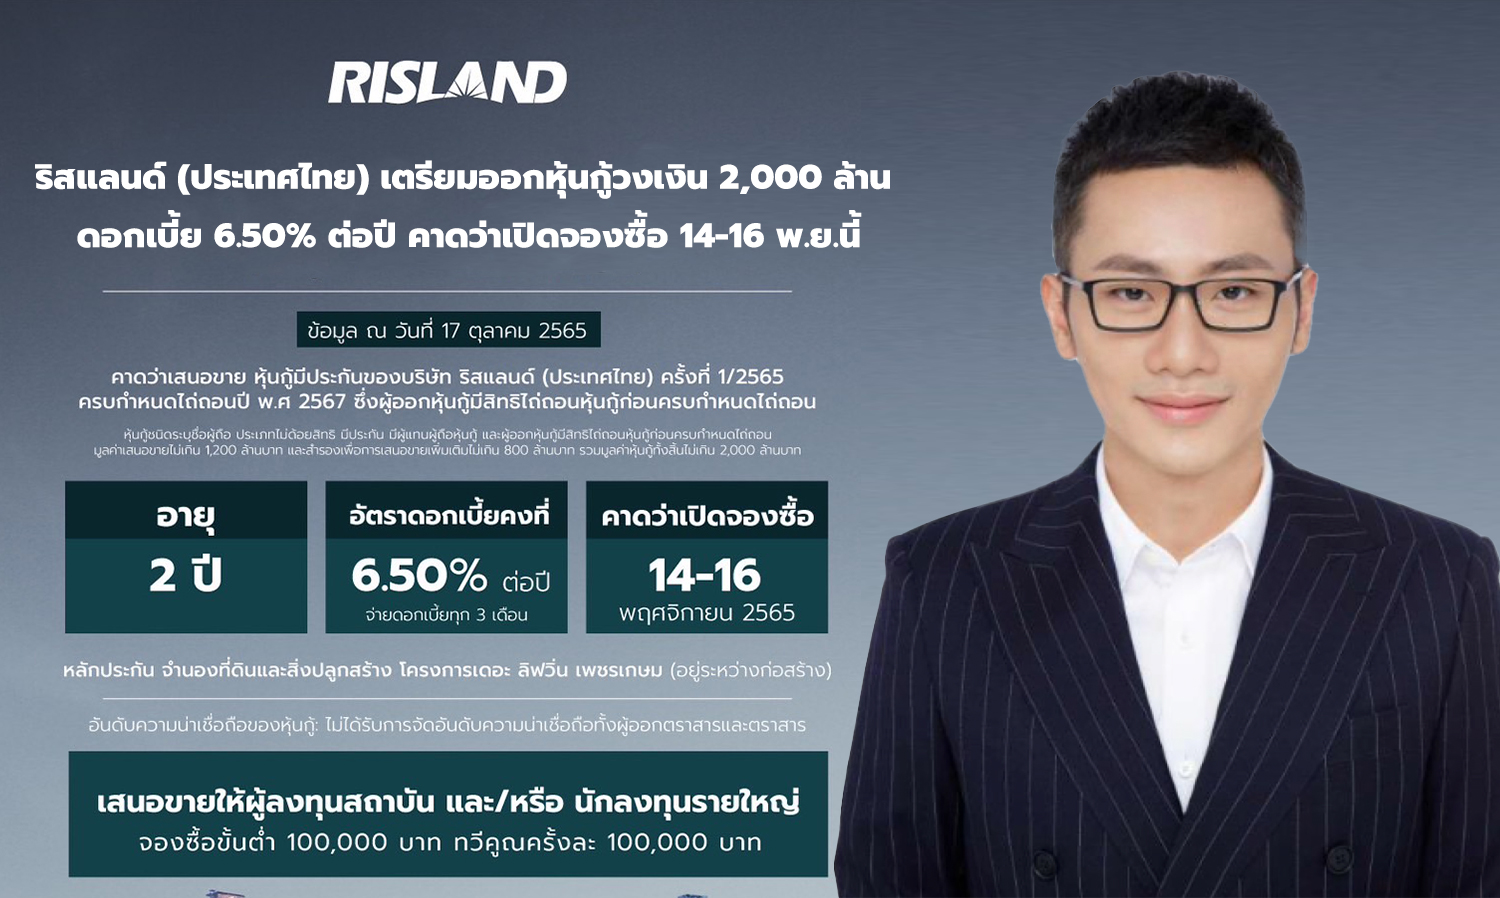 ริสแลนด์ (ประเทศไทย) เตรียมออกหุ้นกู้วงเงิน 2,000 ล้าน ดอกเบี้ย 6.50% ต่อปี คาดว่าเปิดจองซื้อ 14-16 พ.ย.นี้